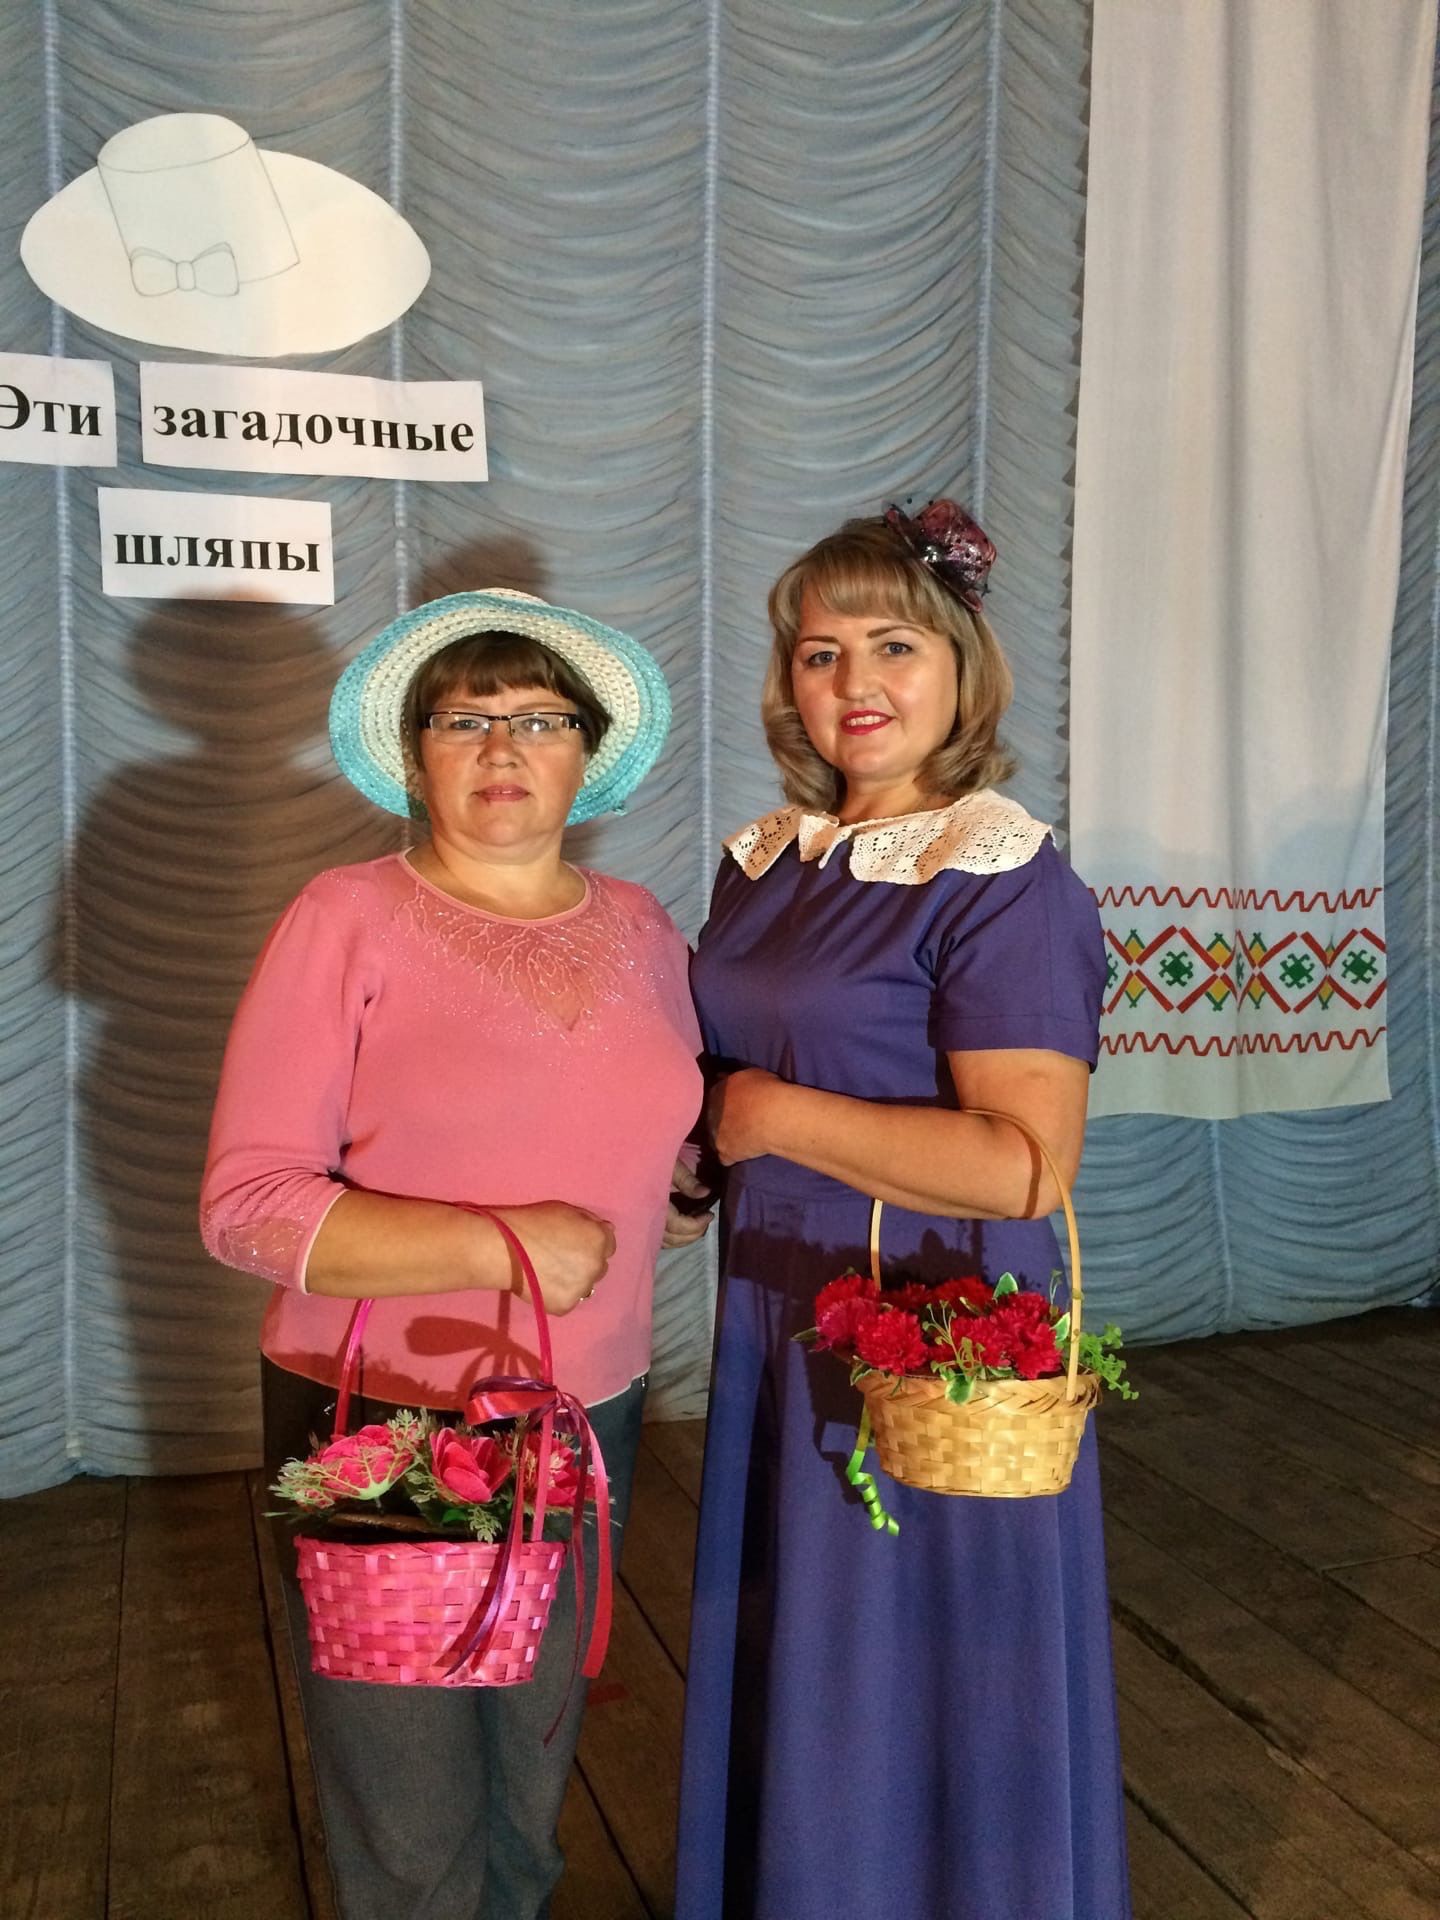 В чистопольском селе состоялся праздник «Эти загадочные шляпы»